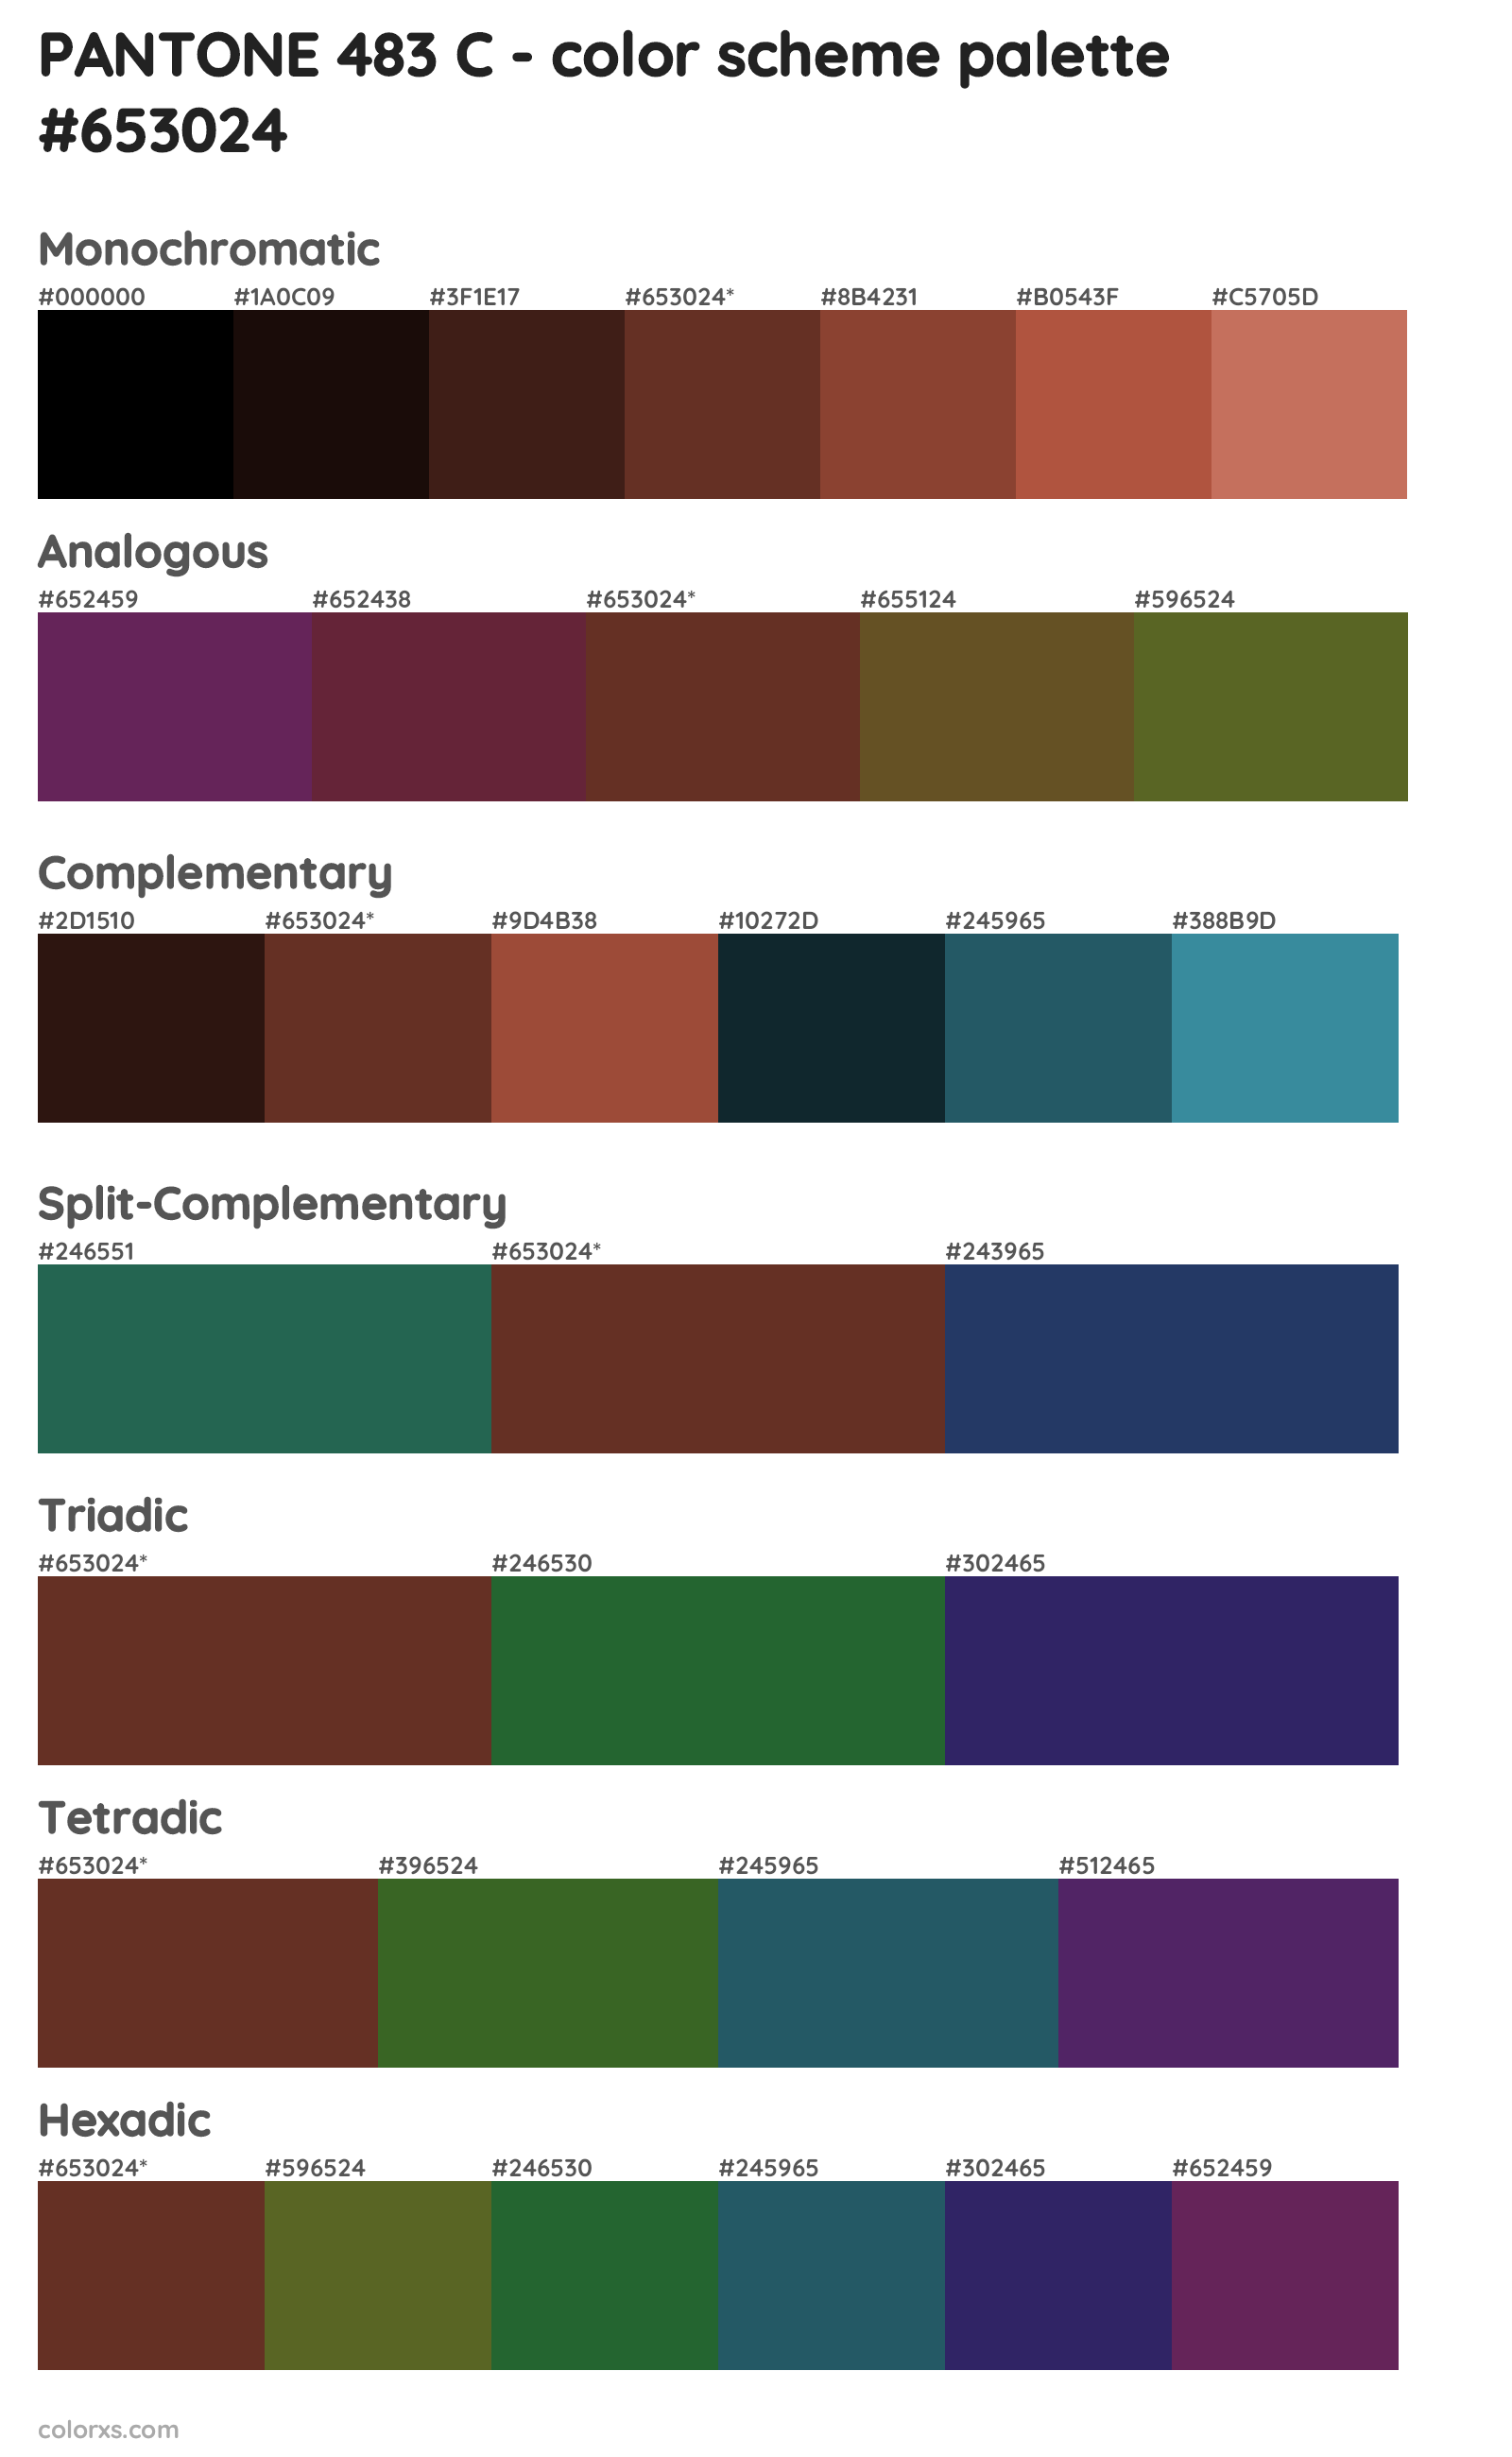 PANTONE 483 C Color Scheme Palettes